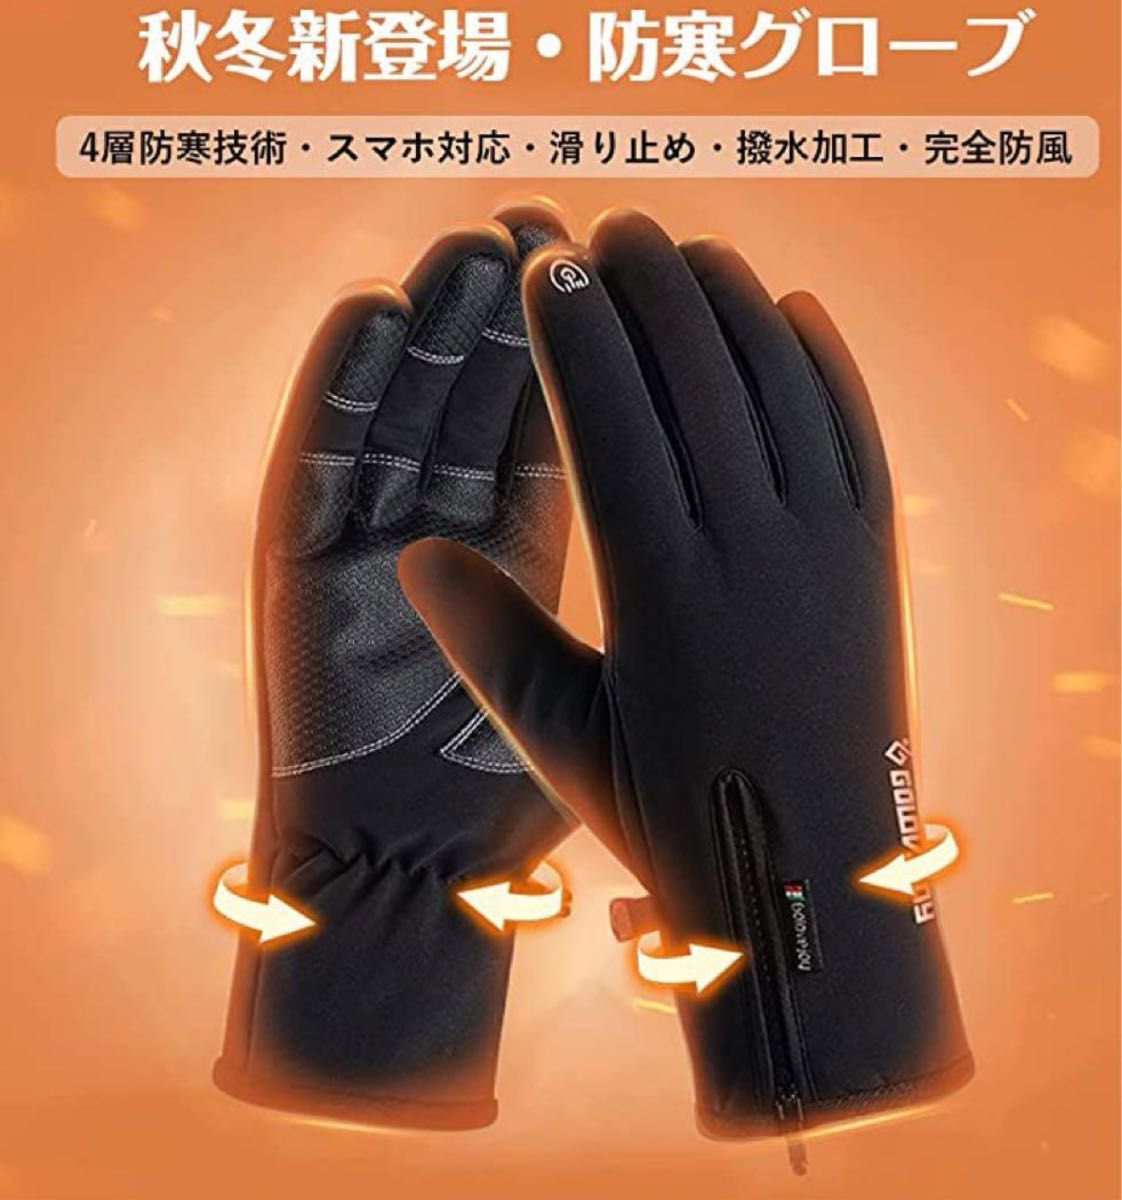 【新品未使用】アウトドアグローブ 防寒手袋 手袋 グローブ